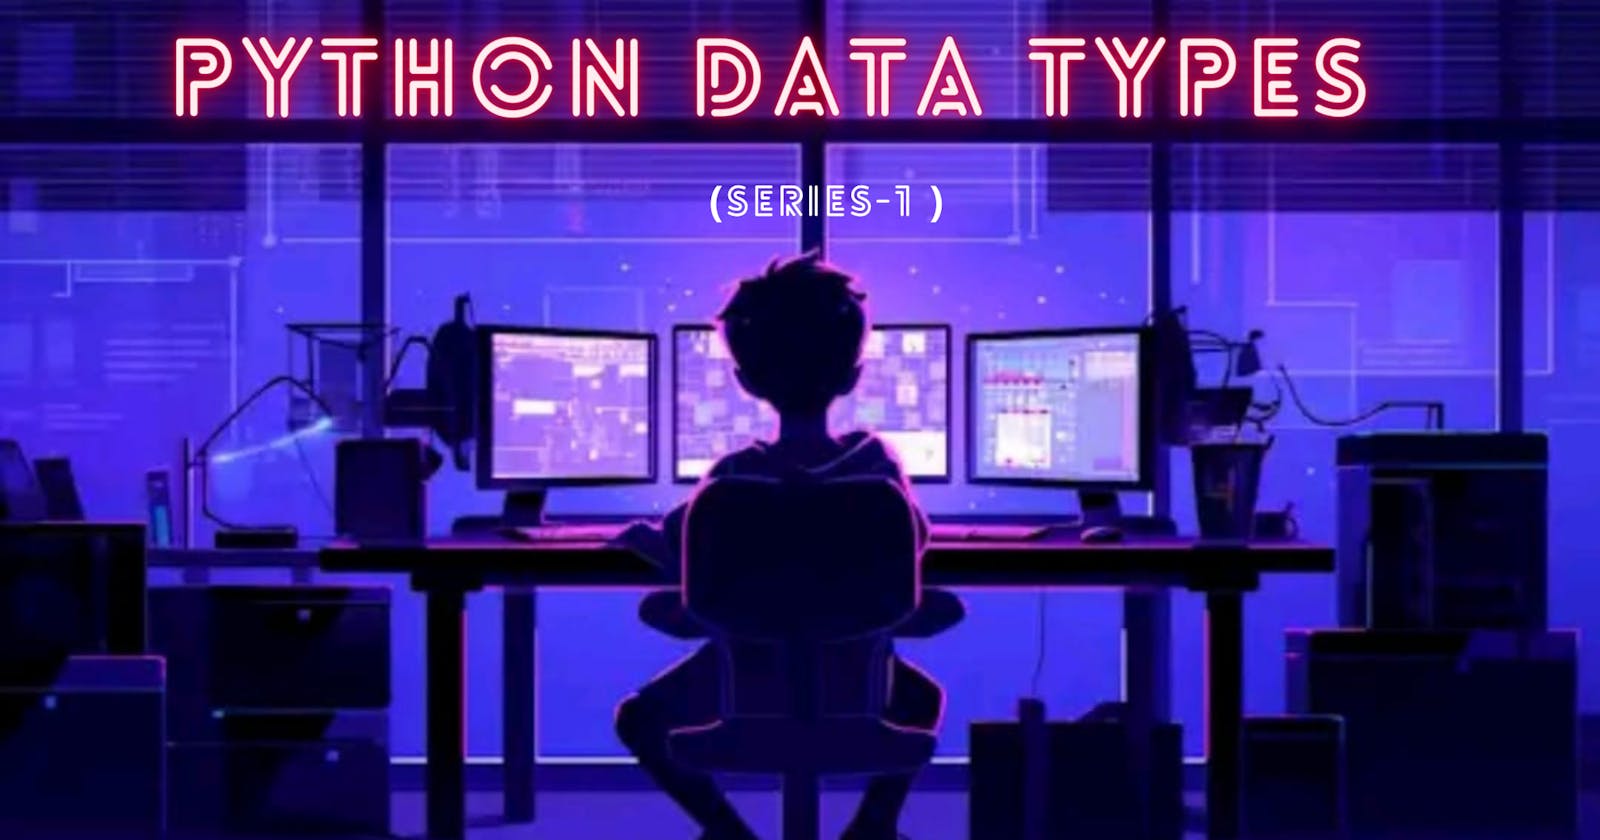 Data Types in python